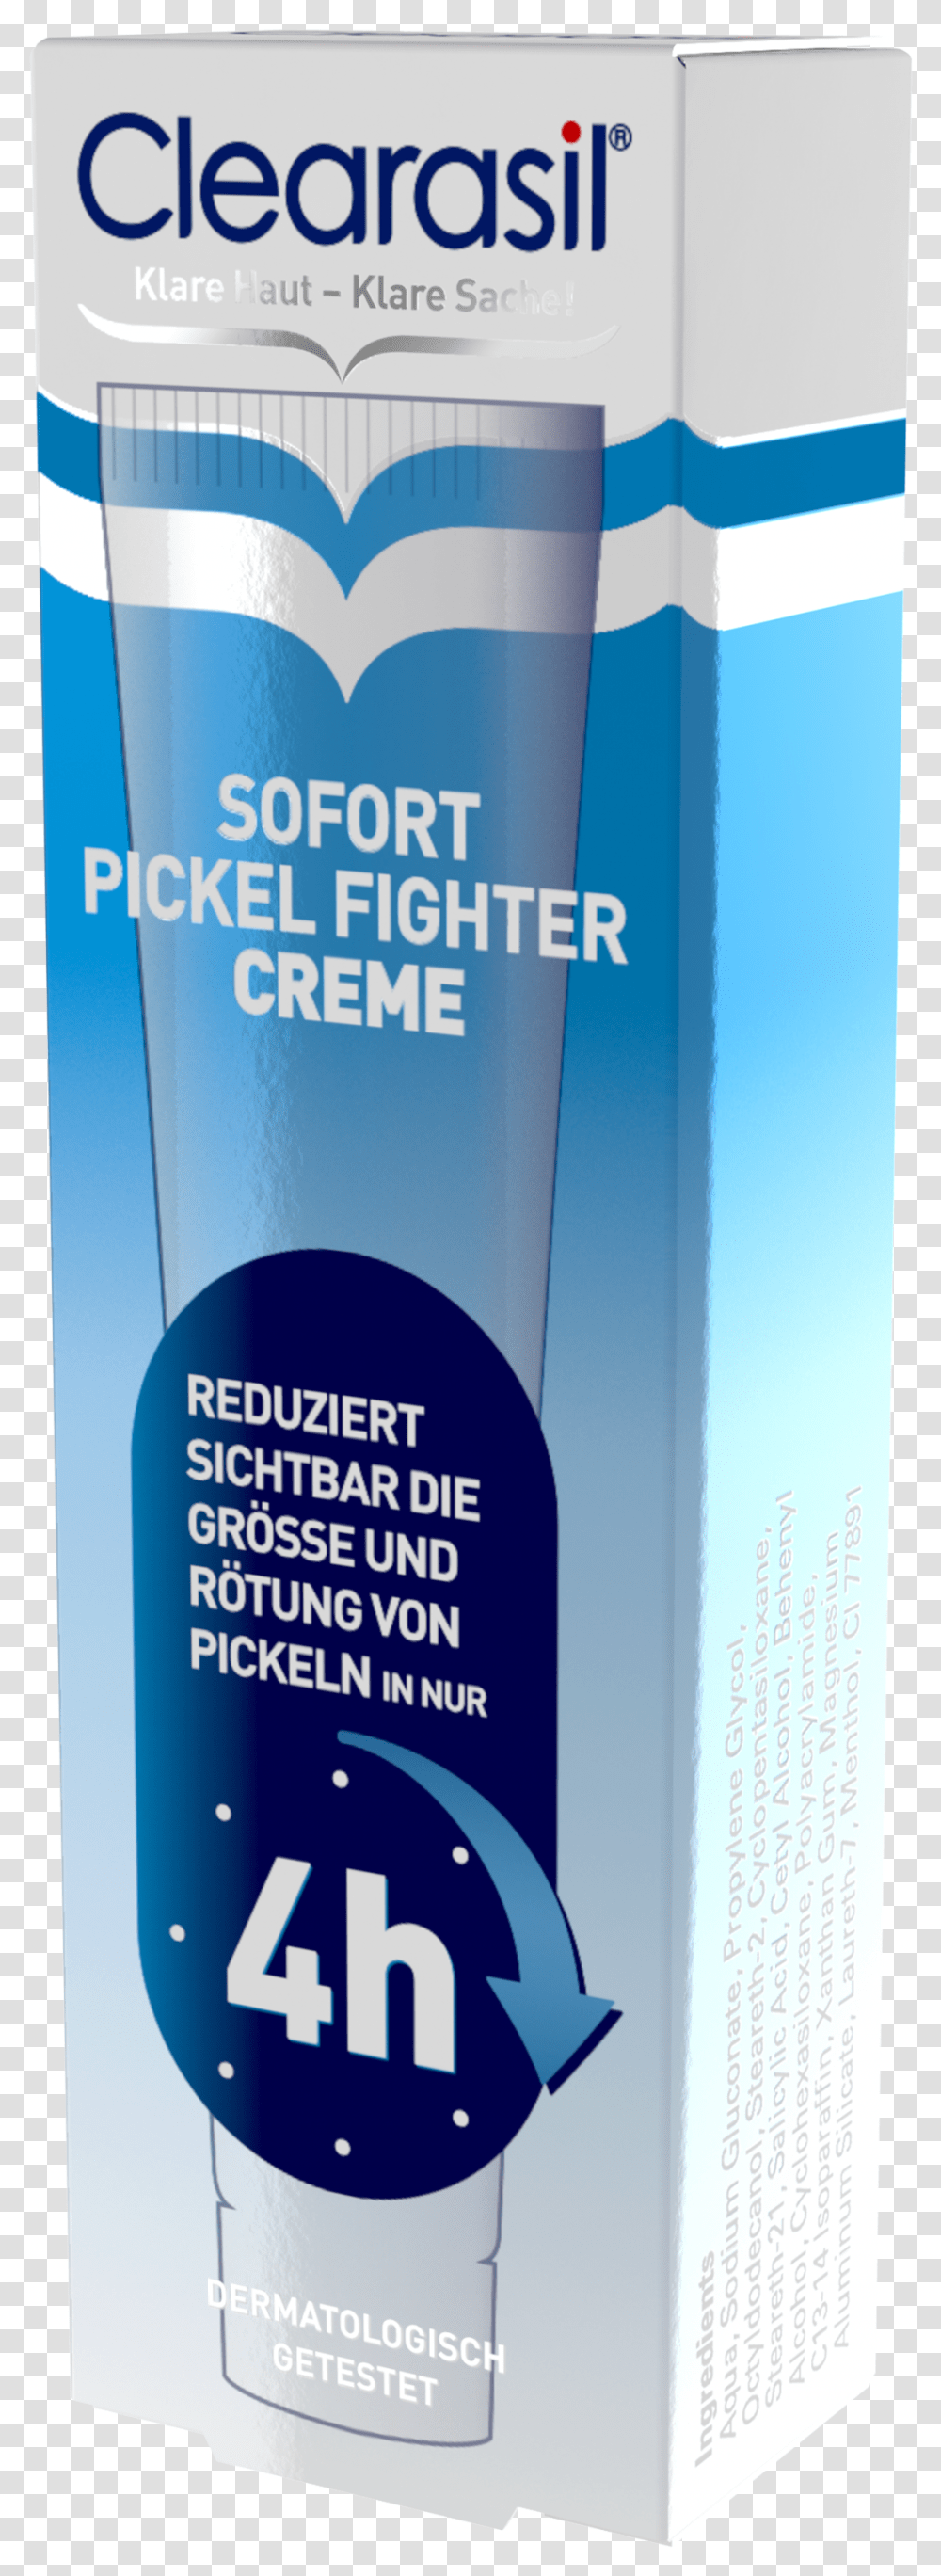 Clearasil Sofort Pickel Fighter Creme Clearasil, Liquor, Alcohol, Beverage, Bottle Transparent Png